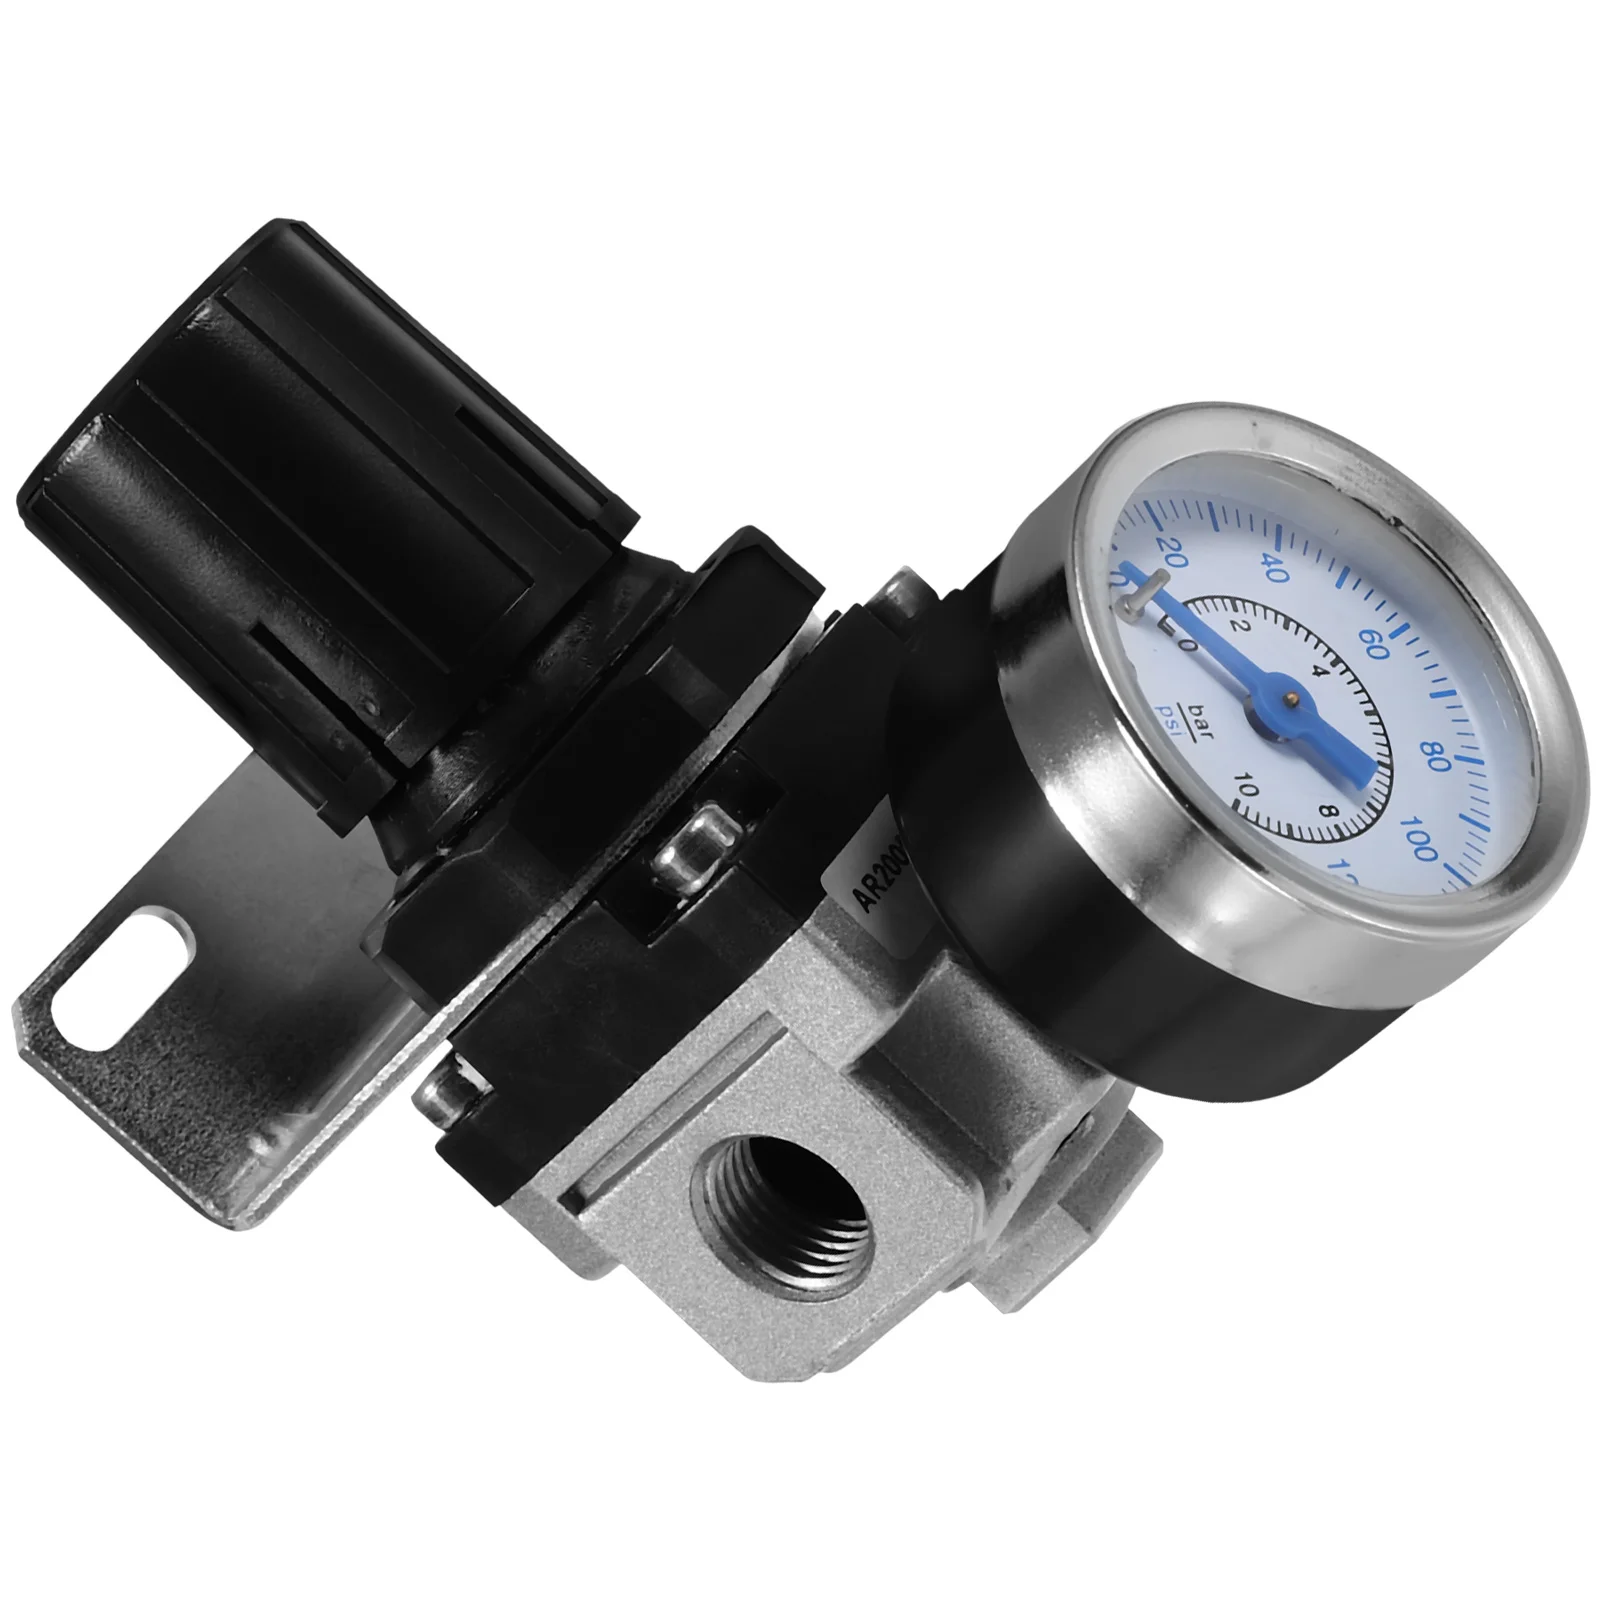 

Регулирующие клапаны воздушного компрессора 2-стандартное устройство давления, пневматические компоненты, регулятор